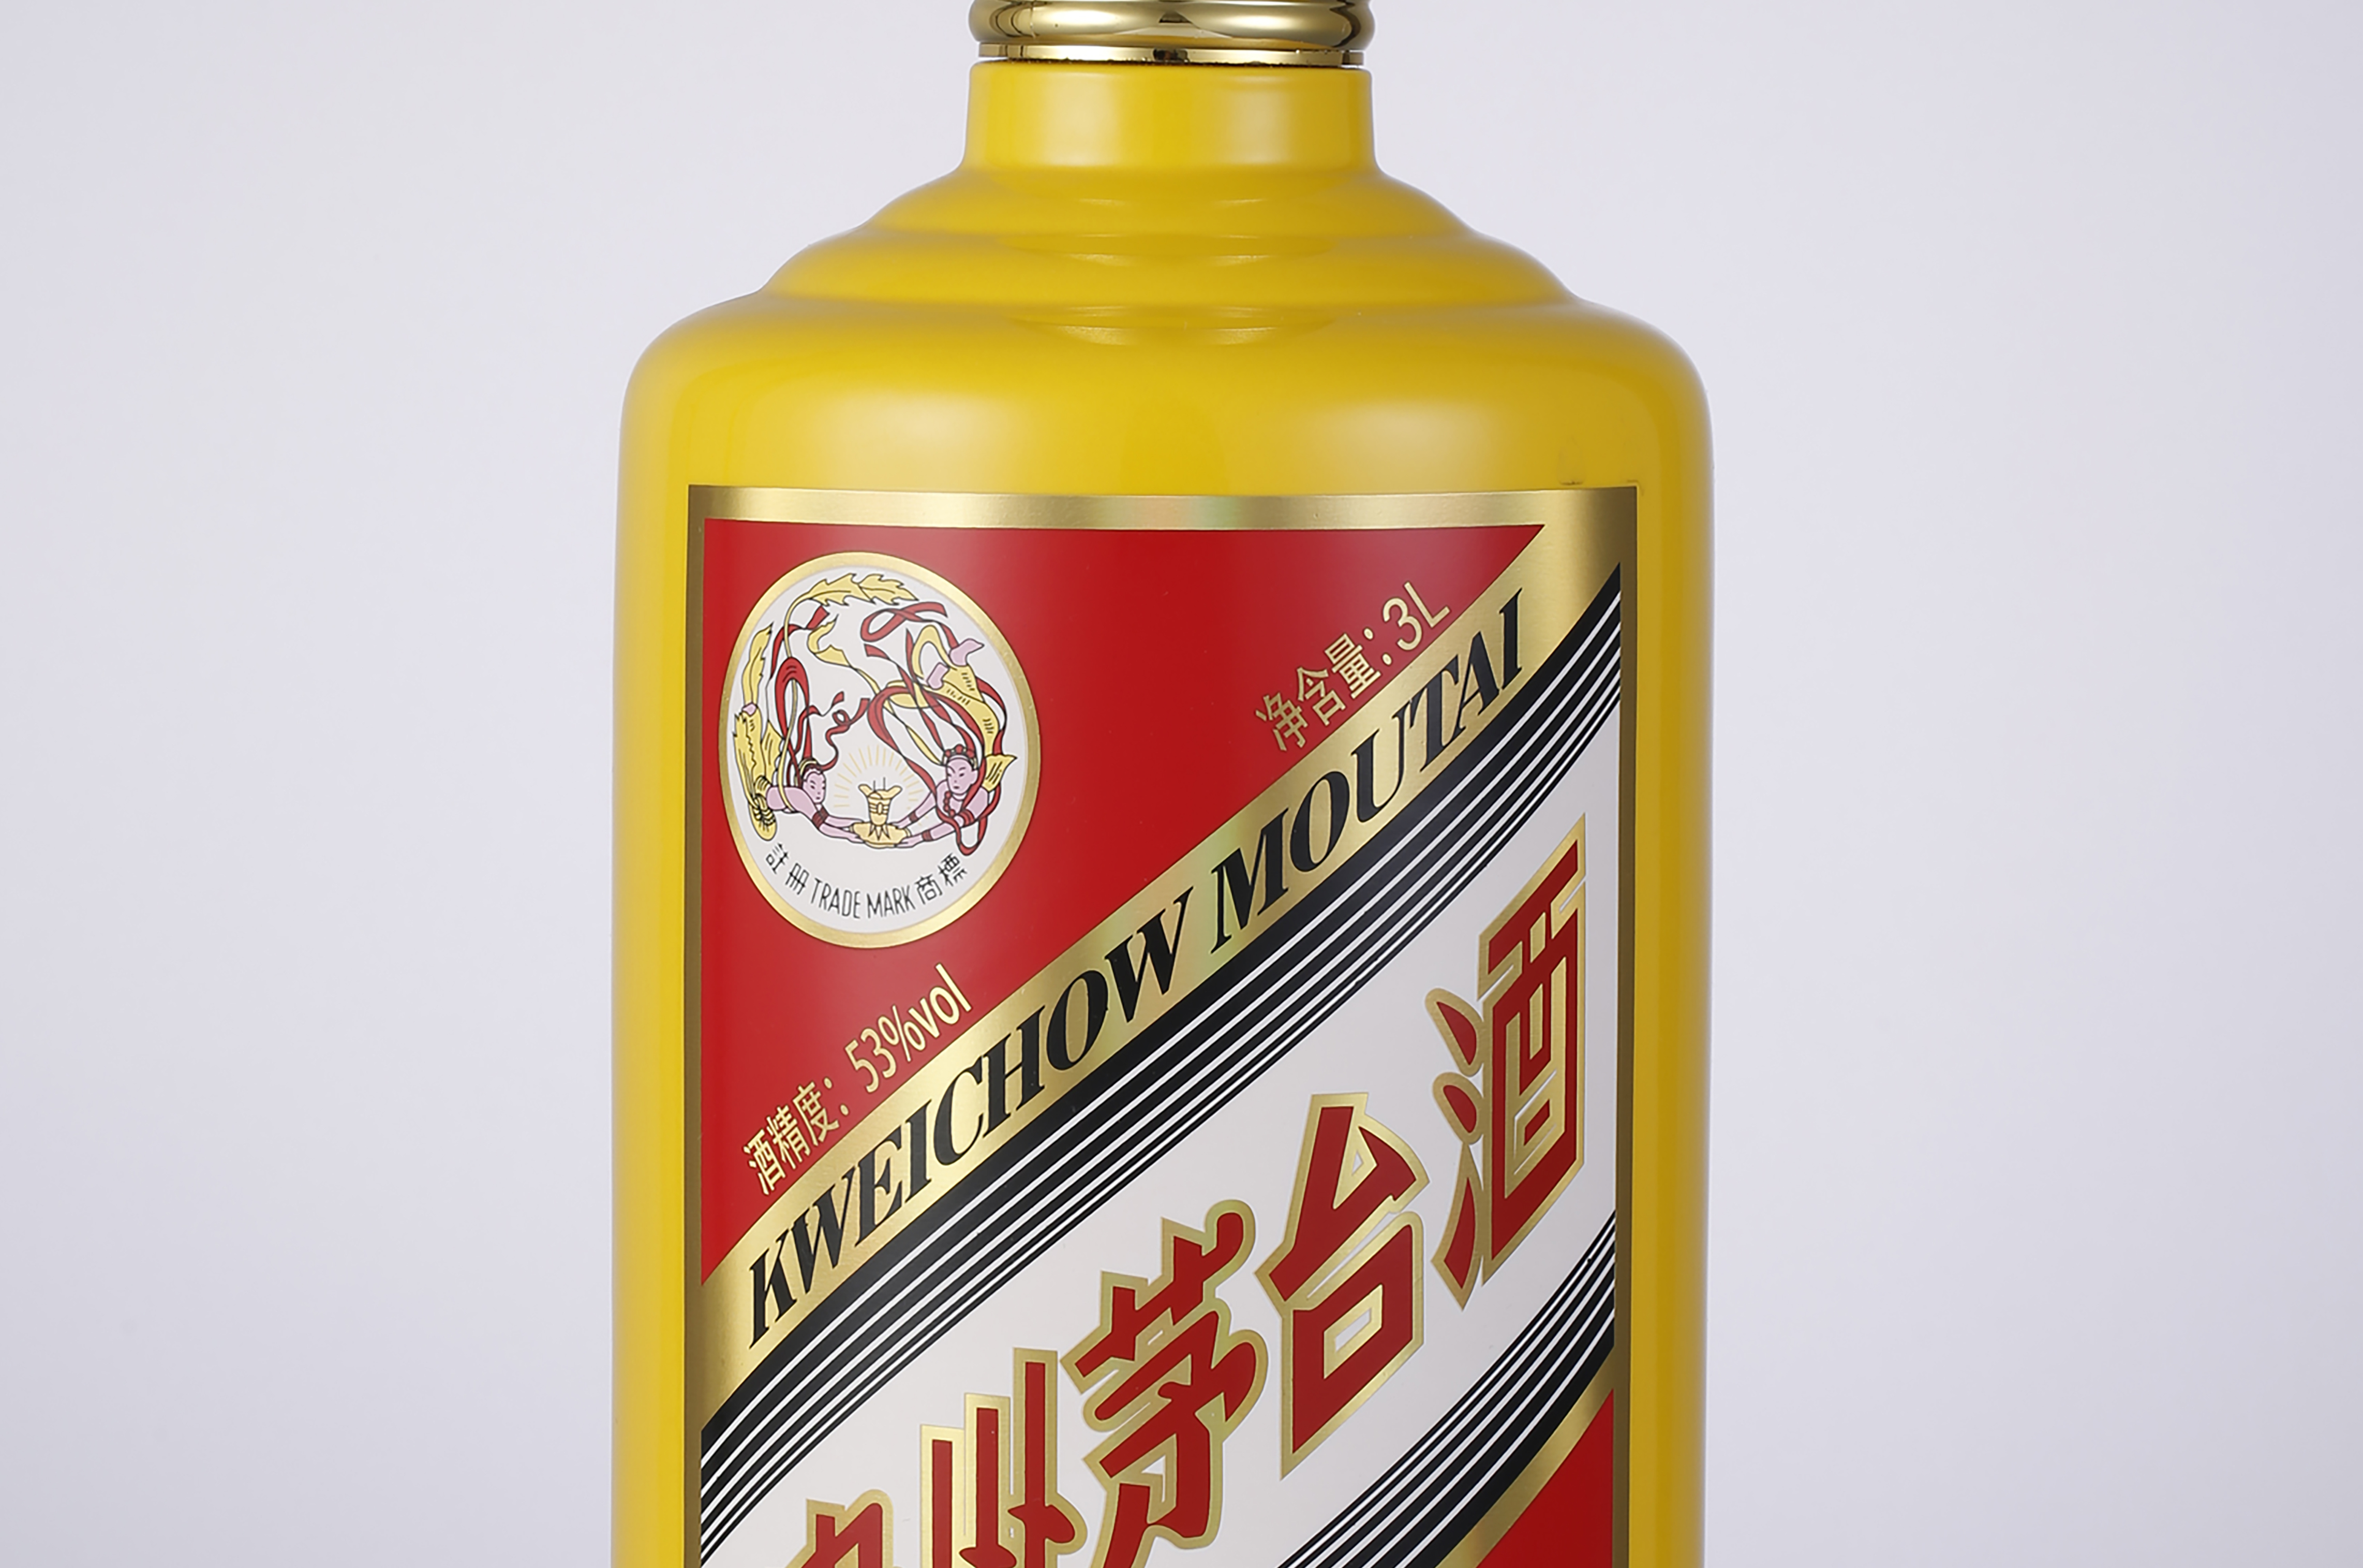 红官窑 国瓷 酒器 贵州茅台特别定制酒瓶